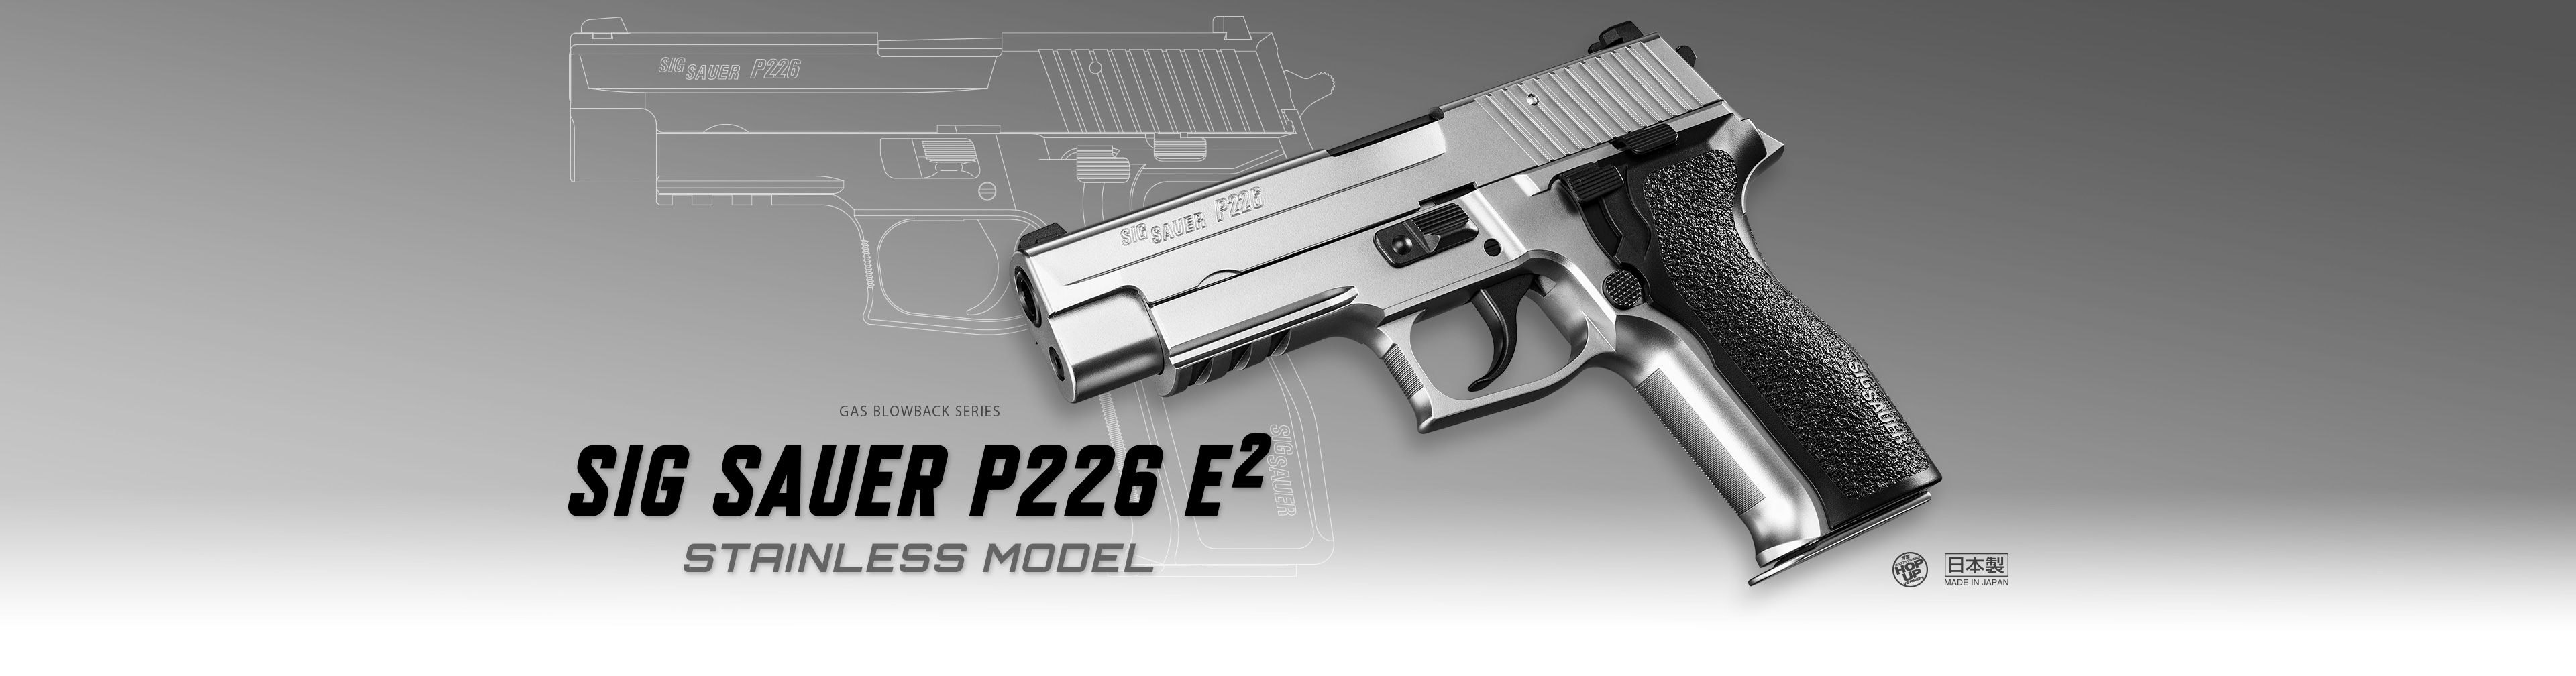 シグ ザウエル P226 E2 ステンレスモデル